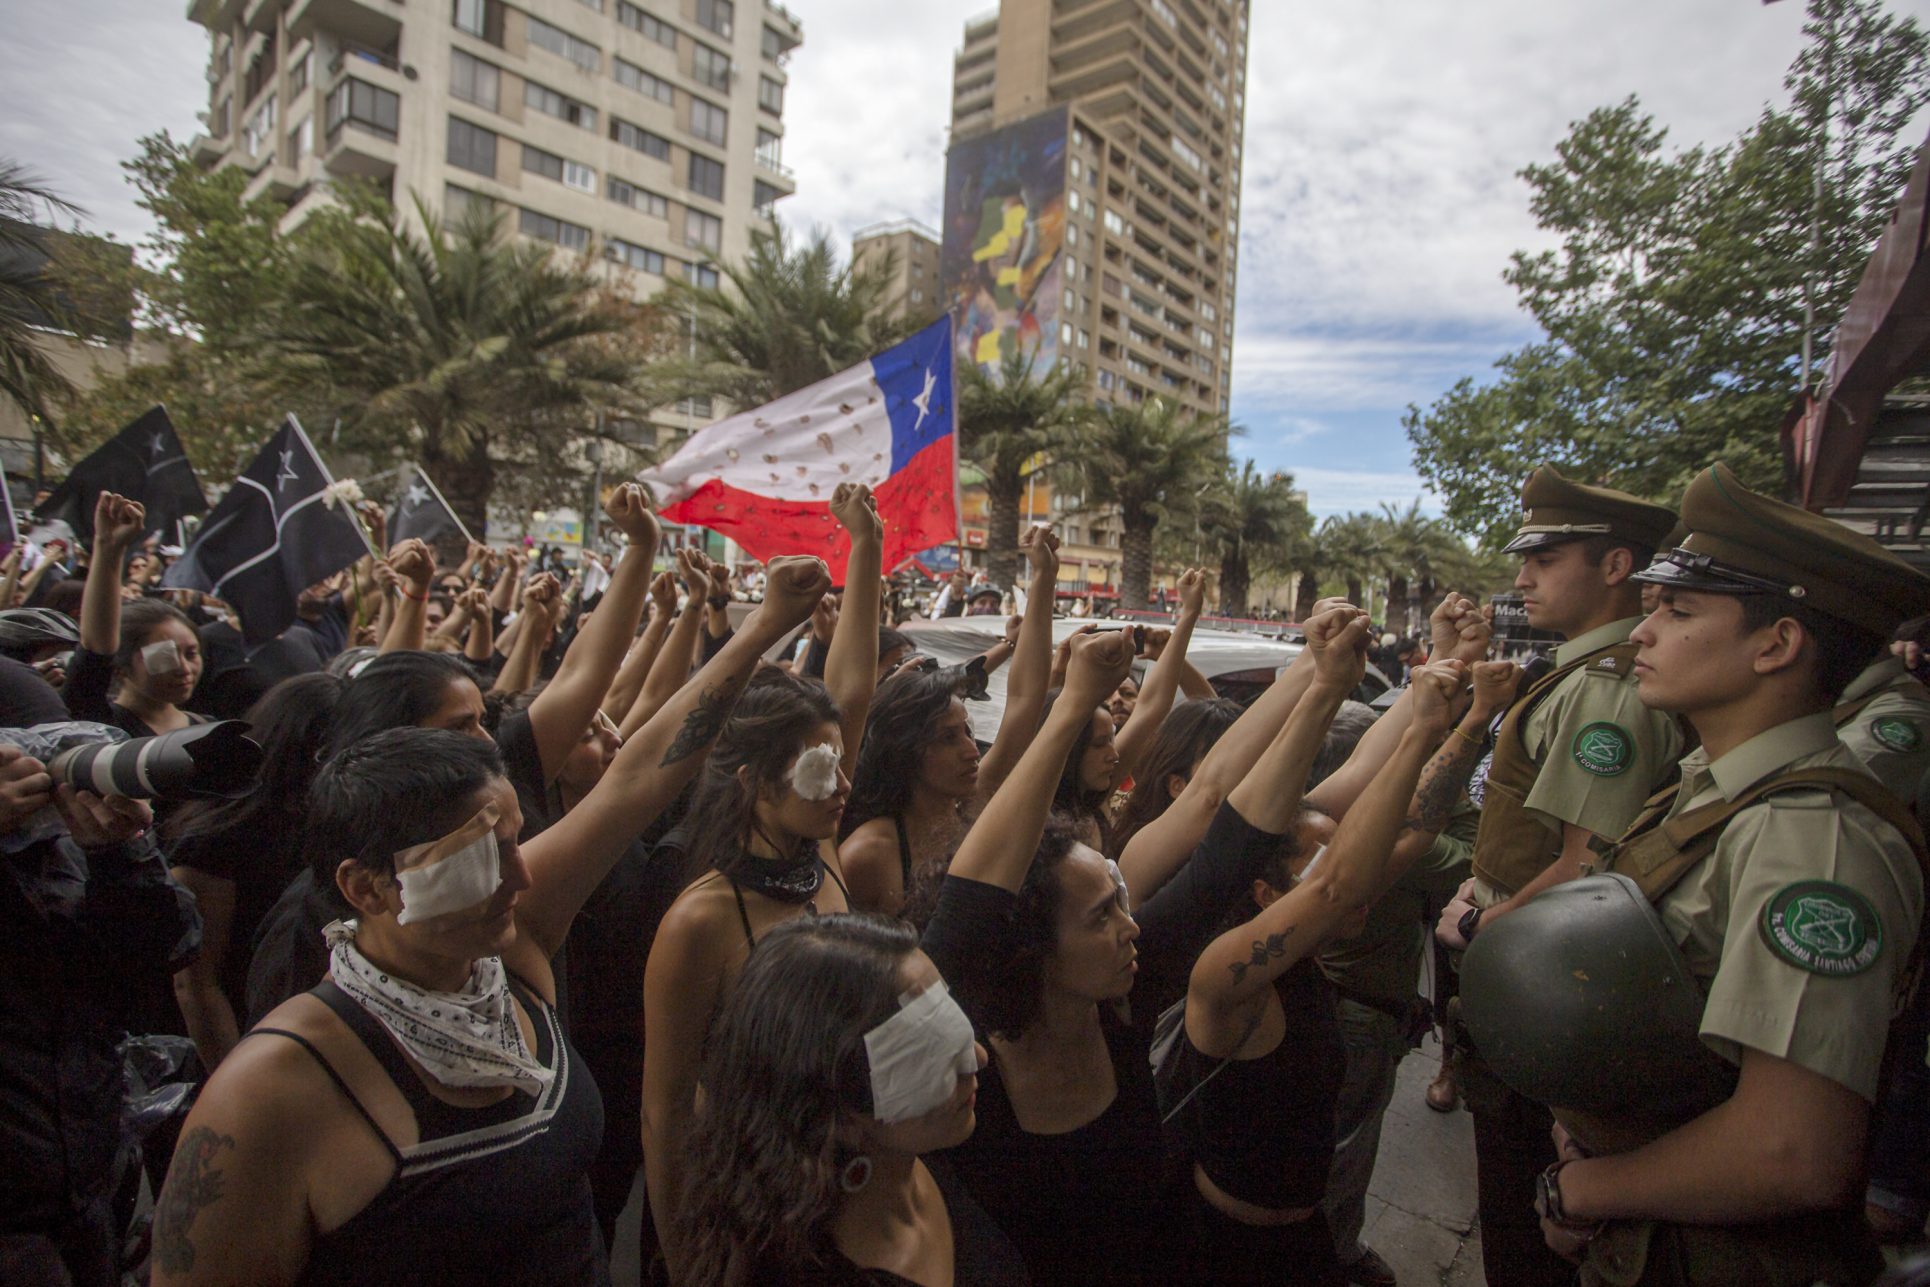 Mujeres de luto: una protesta silenciosa se suma a la convulsión social en Chile